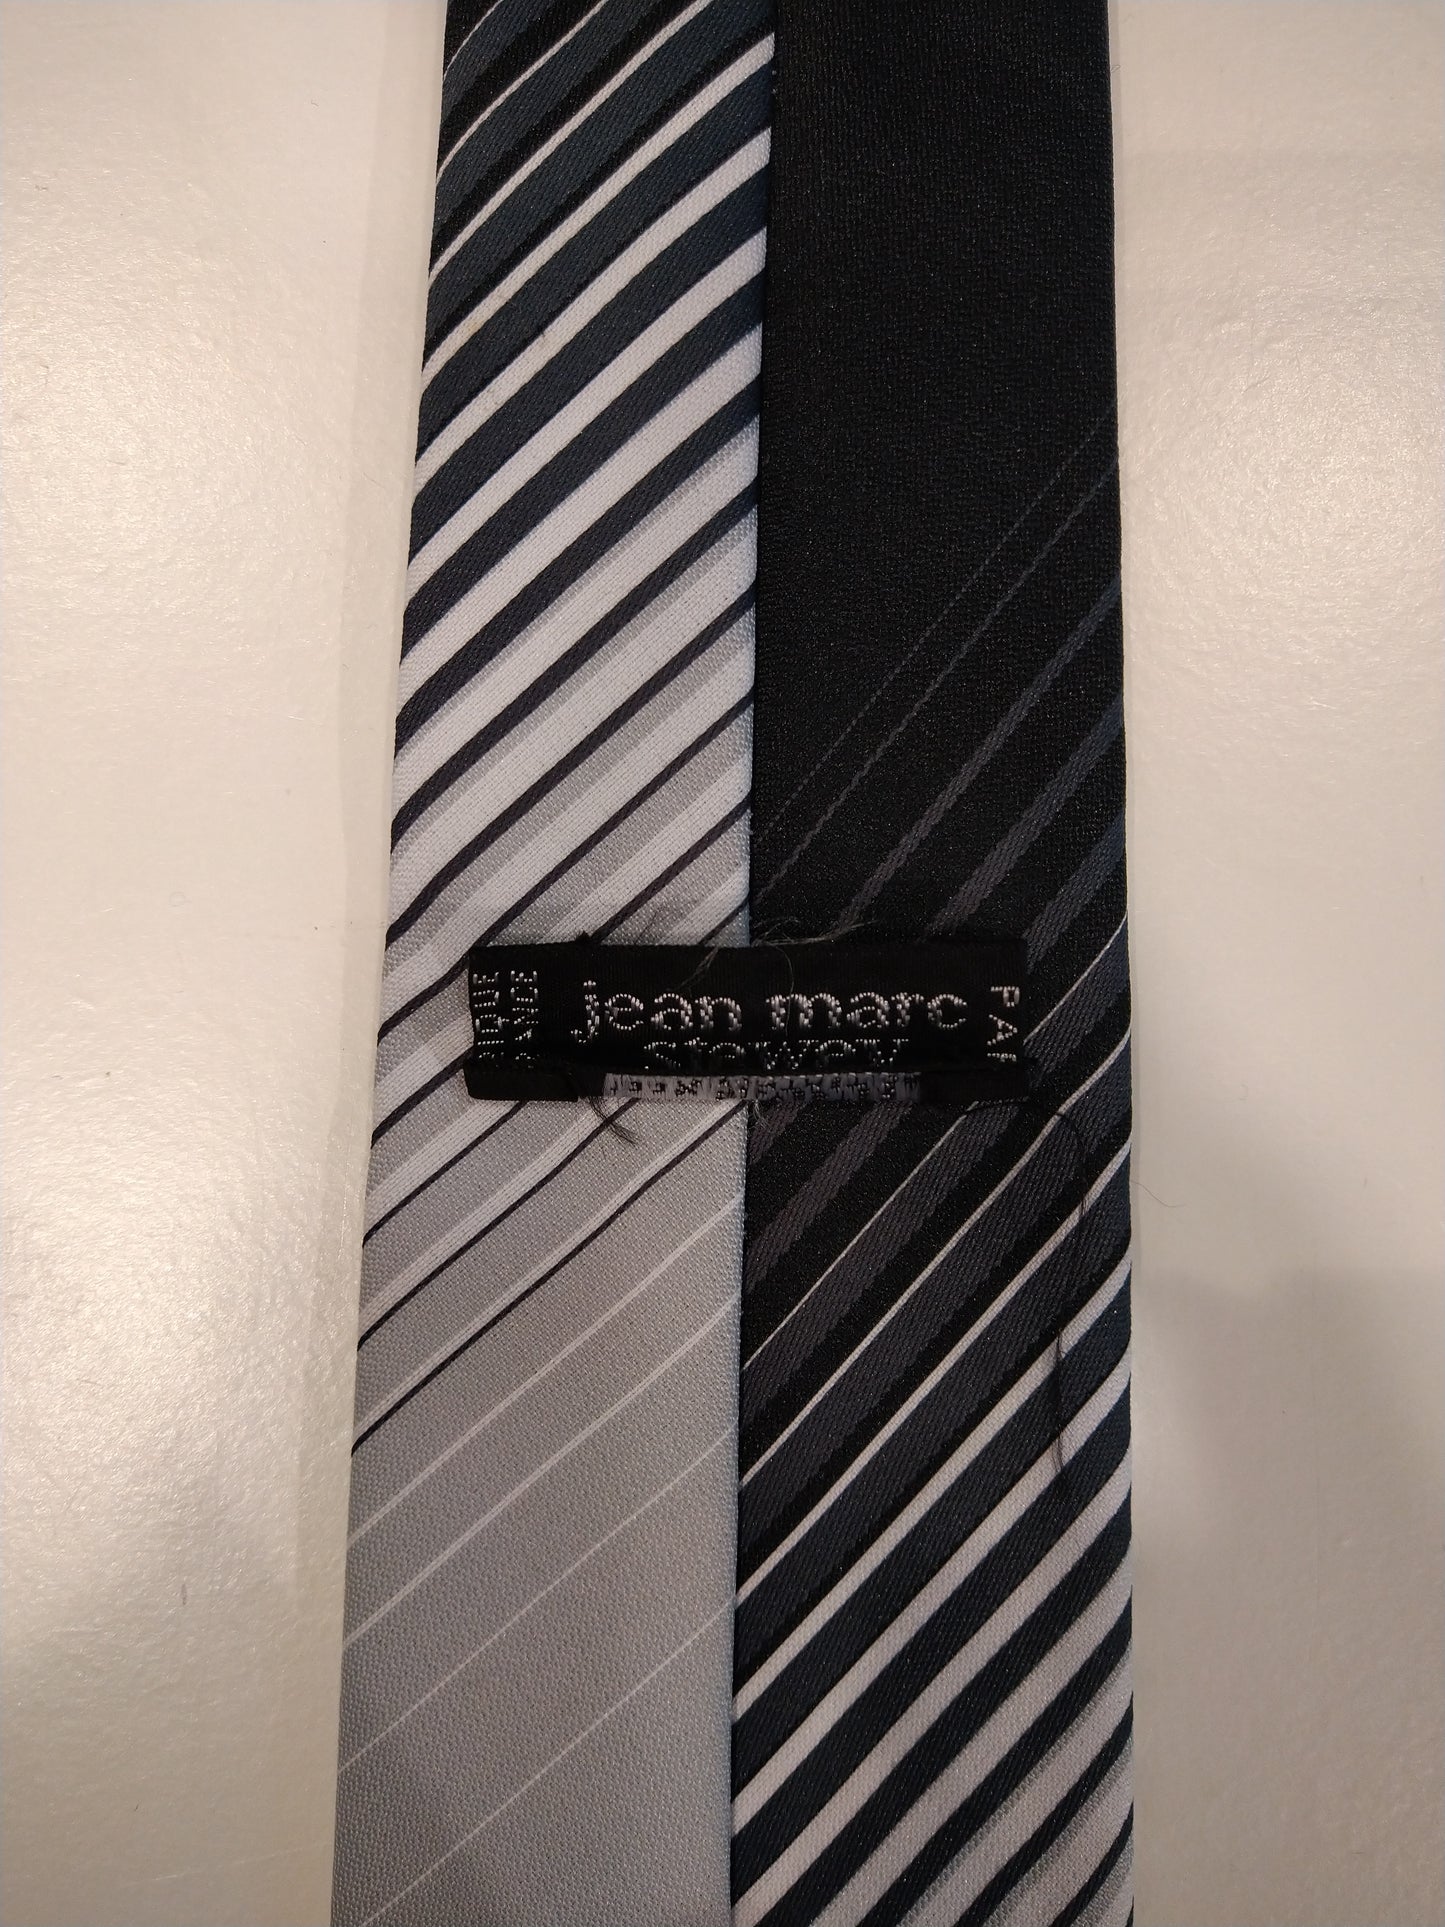 Jean Marc Stewey polyester stropdas. Grijs zwart motief.